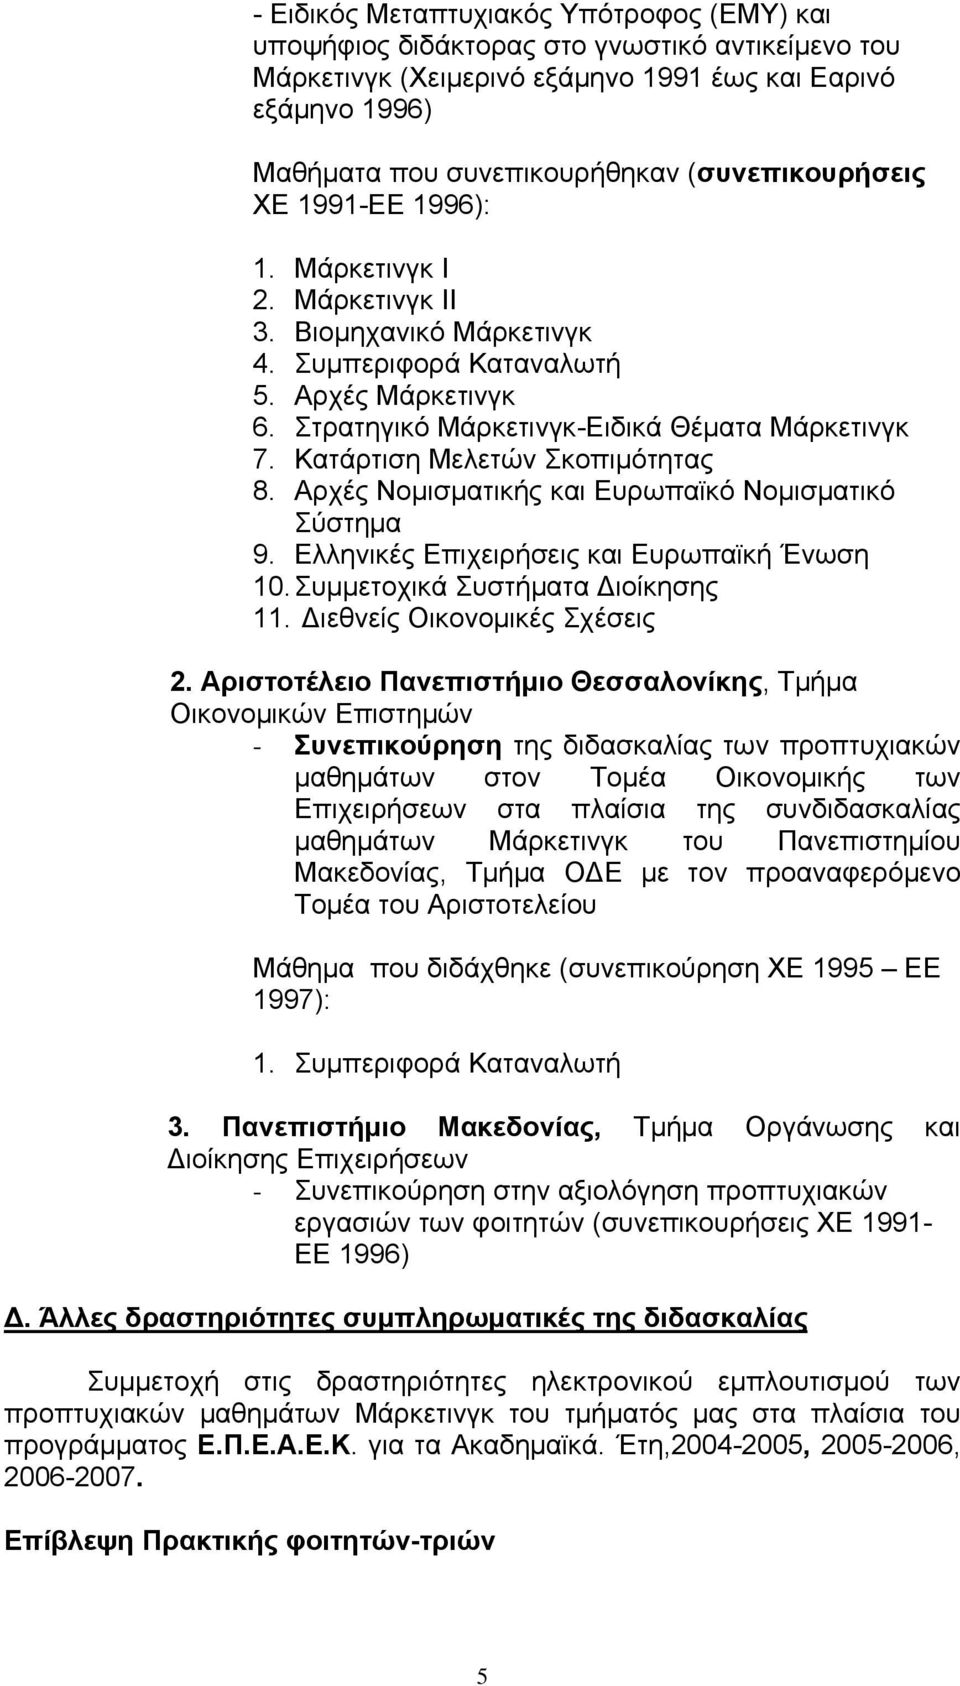 Κατάρτιση Μελετών Σκοπιμότητας 8. Αρχές Νομισματικής και Ευρωπαϊκό Νομισματικό Σύστημα 9. Ελληνικές Επιχειρήσεις και Ευρωπαϊκή Ένωση 10. Συμμετοχικά Συστήματα Διοίκησης 11.